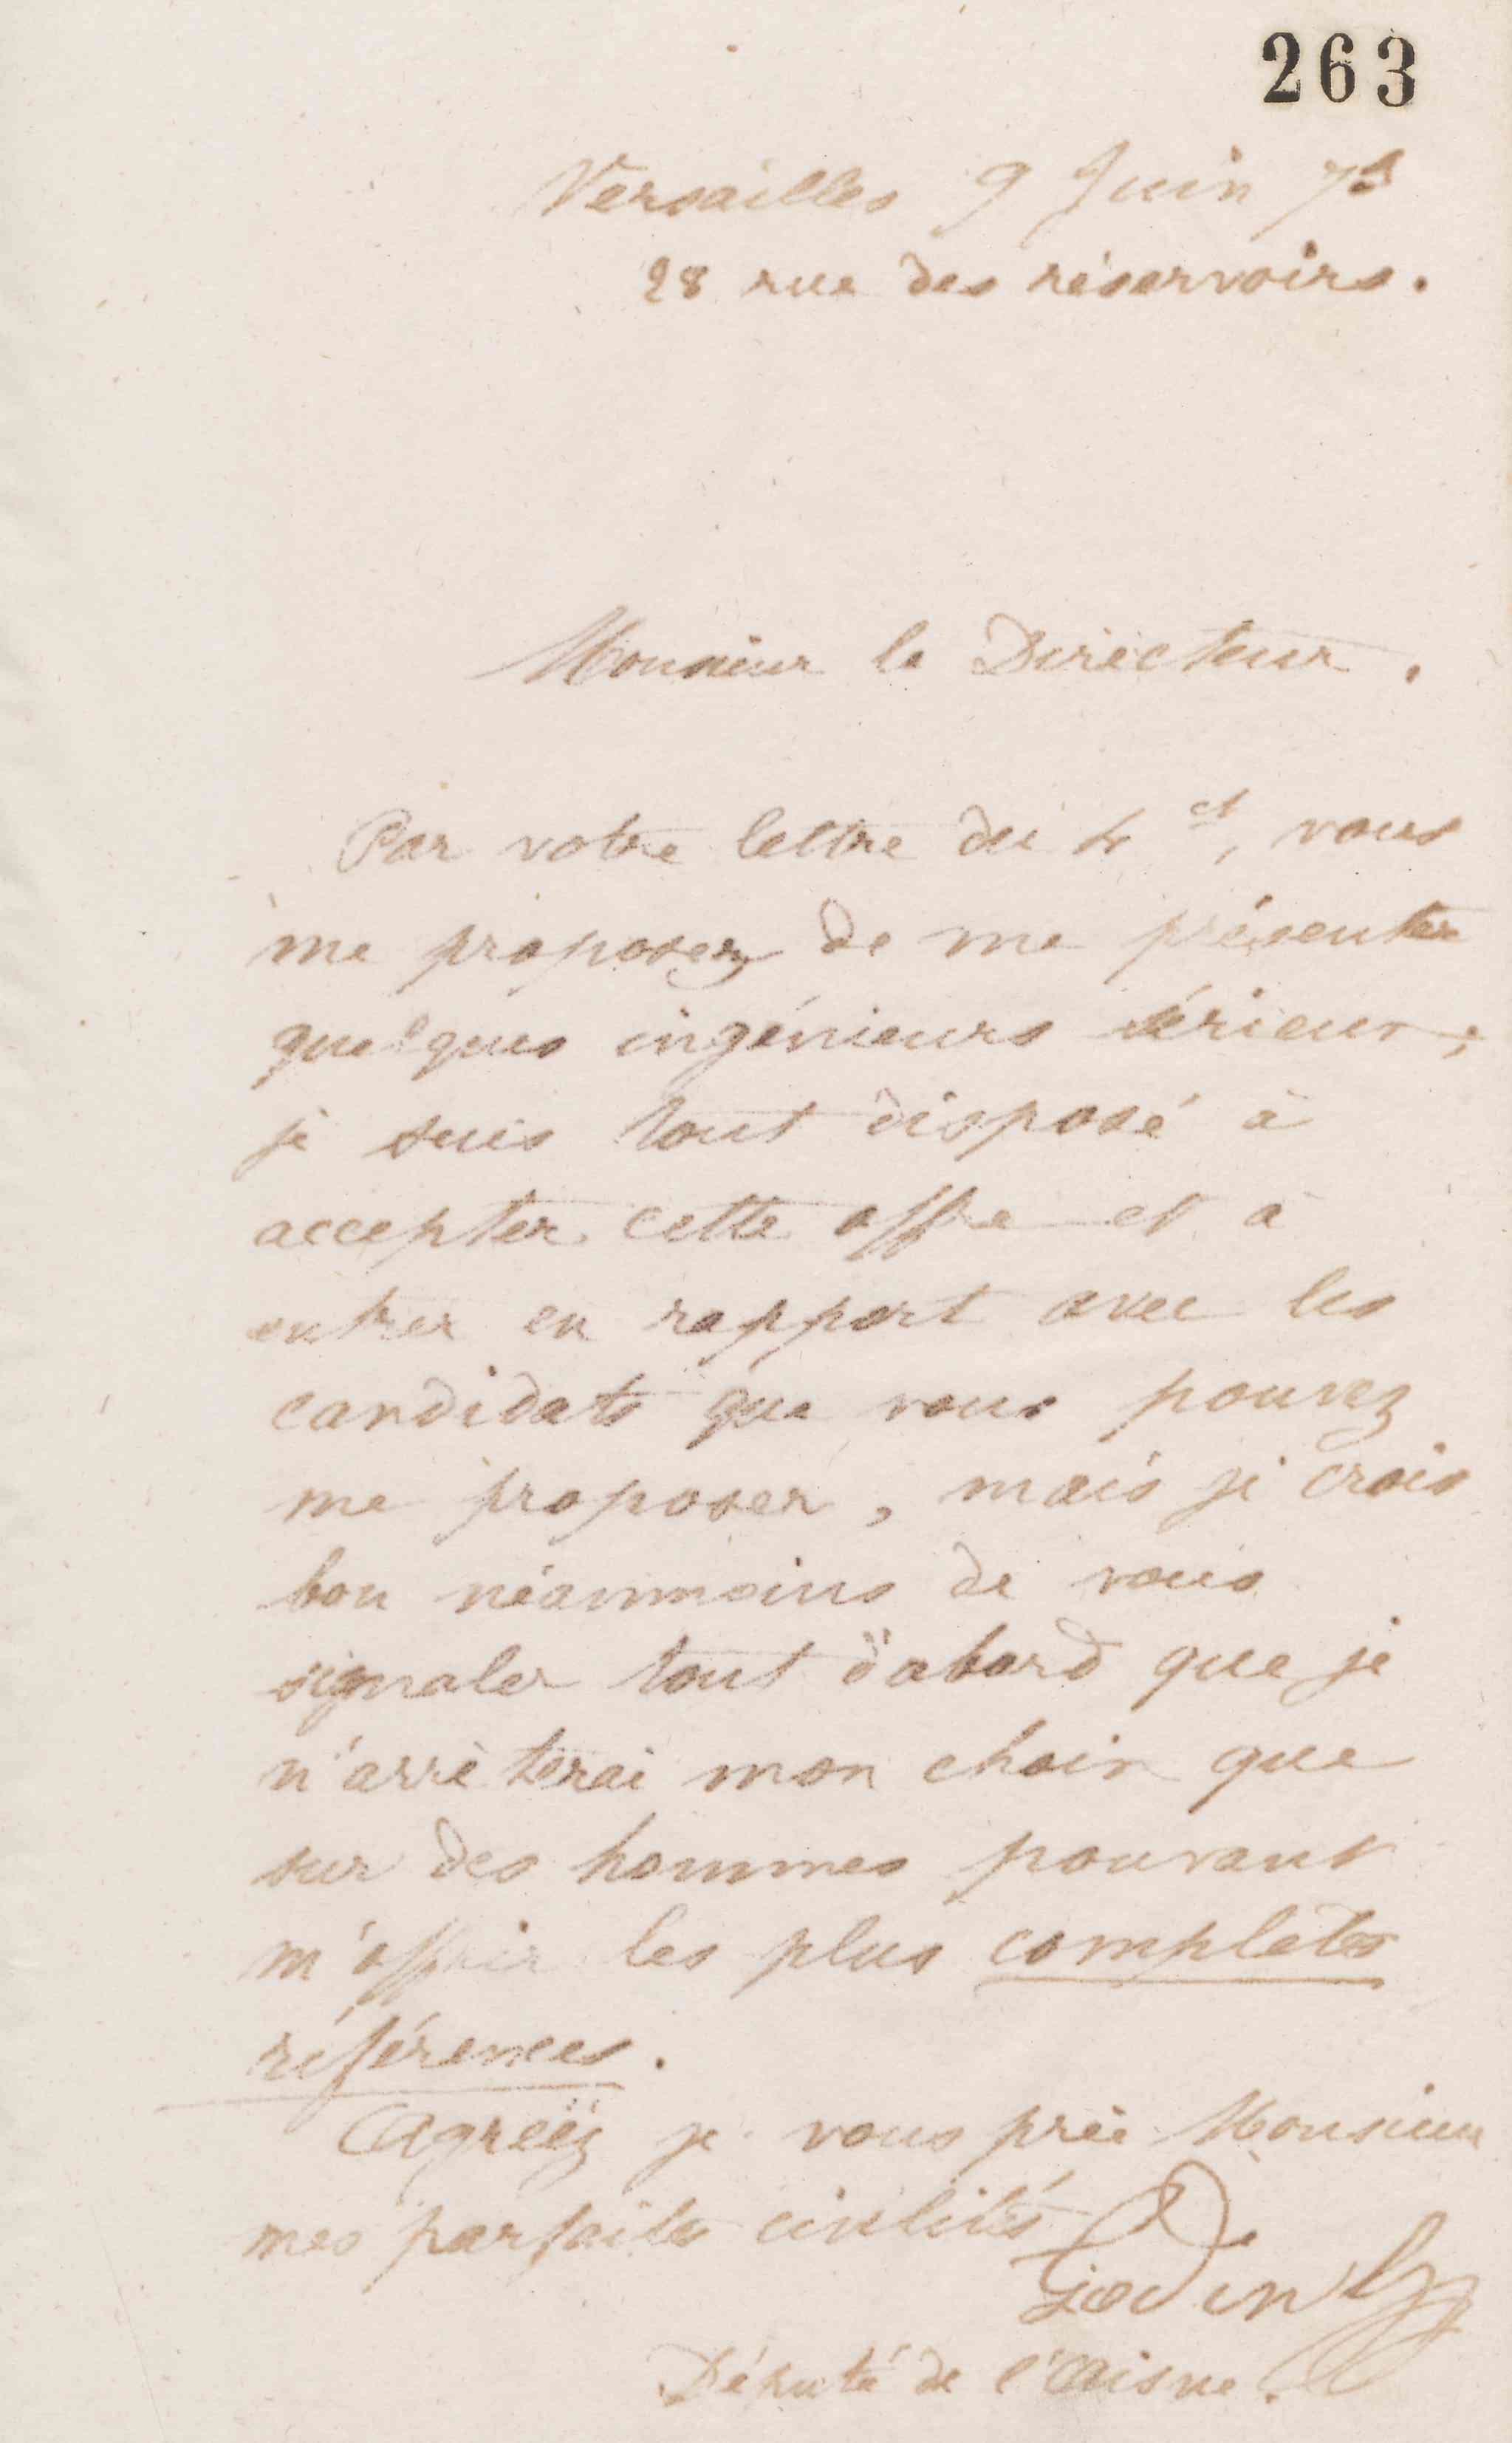 Jean-Baptiste André Godin à monsieur le directeur, 9 juin 1873